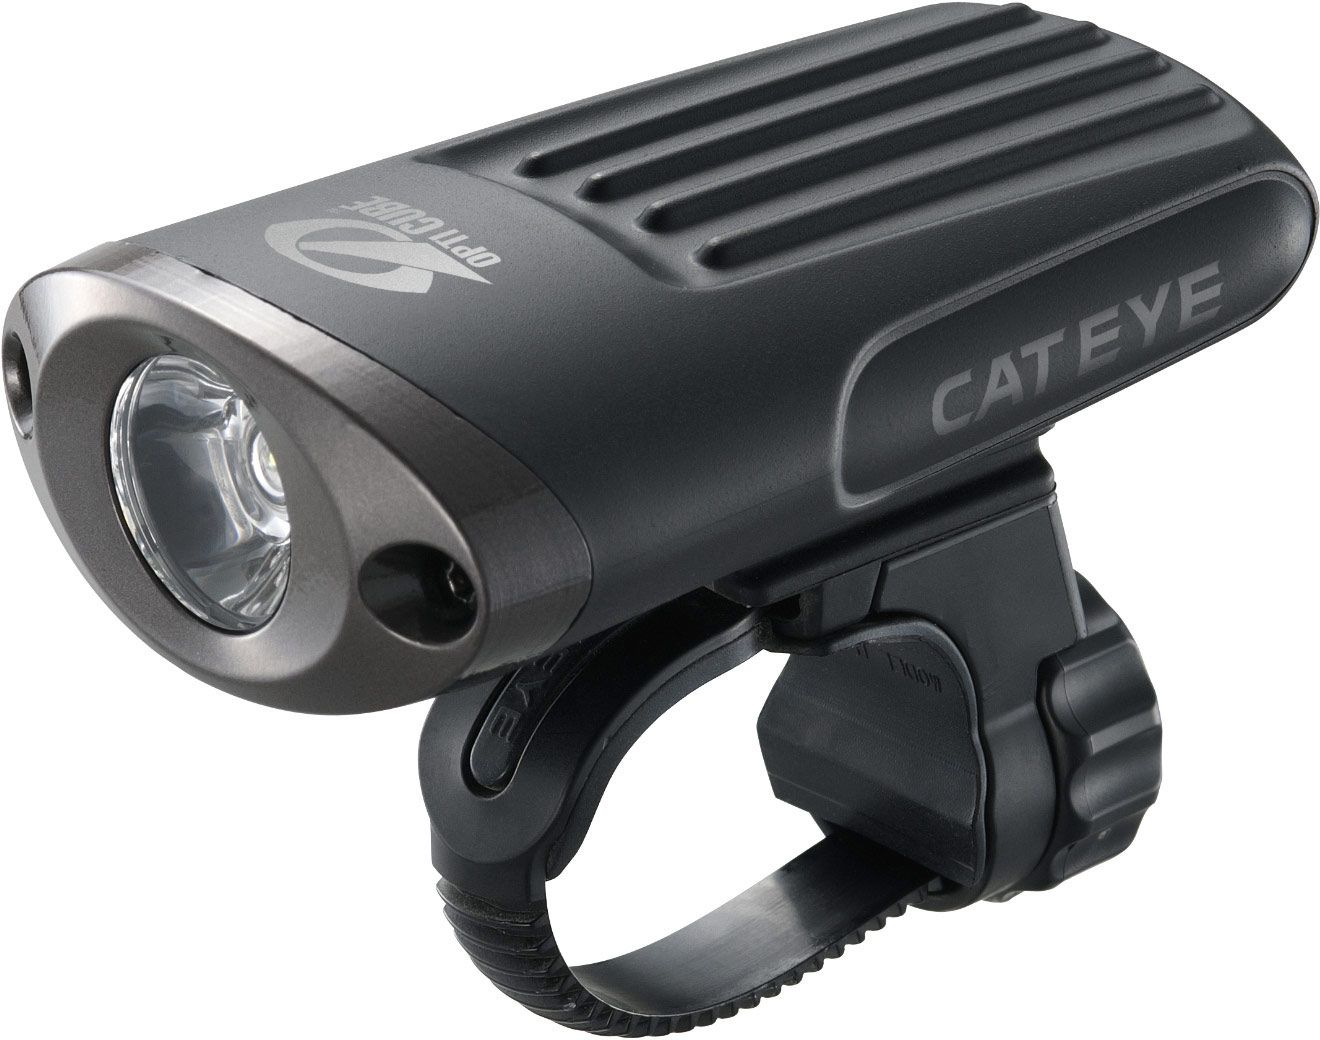  Передний фонарь для велосипеда Cat Eye HL-EL620RC (CE5336870)